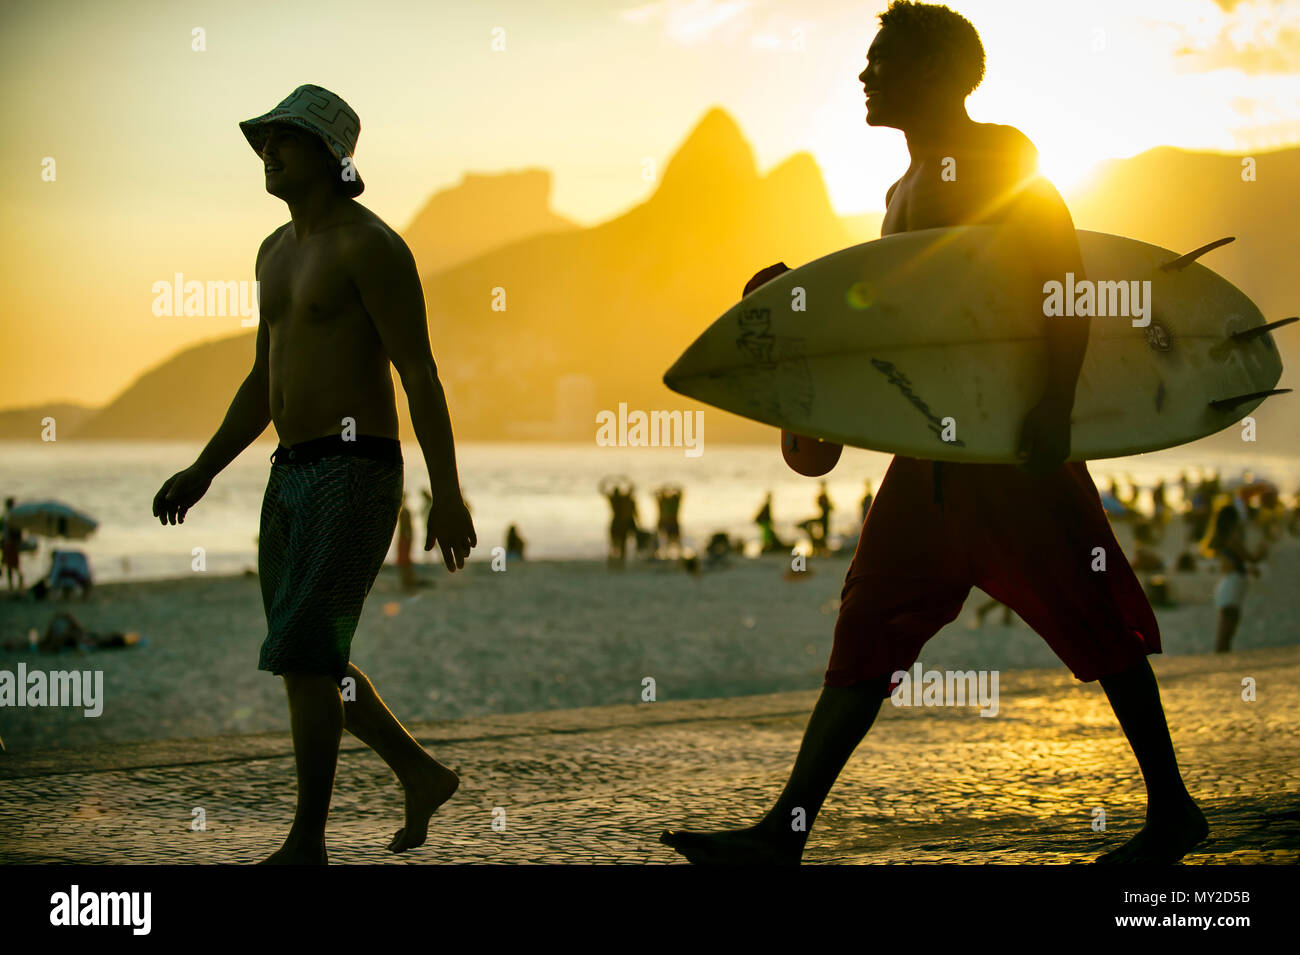 RIO DE JANEIRO - Mars 20, 2017 : Sunset silhouettes de deux jeunes surfeurs avec surf à Arpoador, Ipanema avec deux frères montagne en arrière-plan Banque D'Images